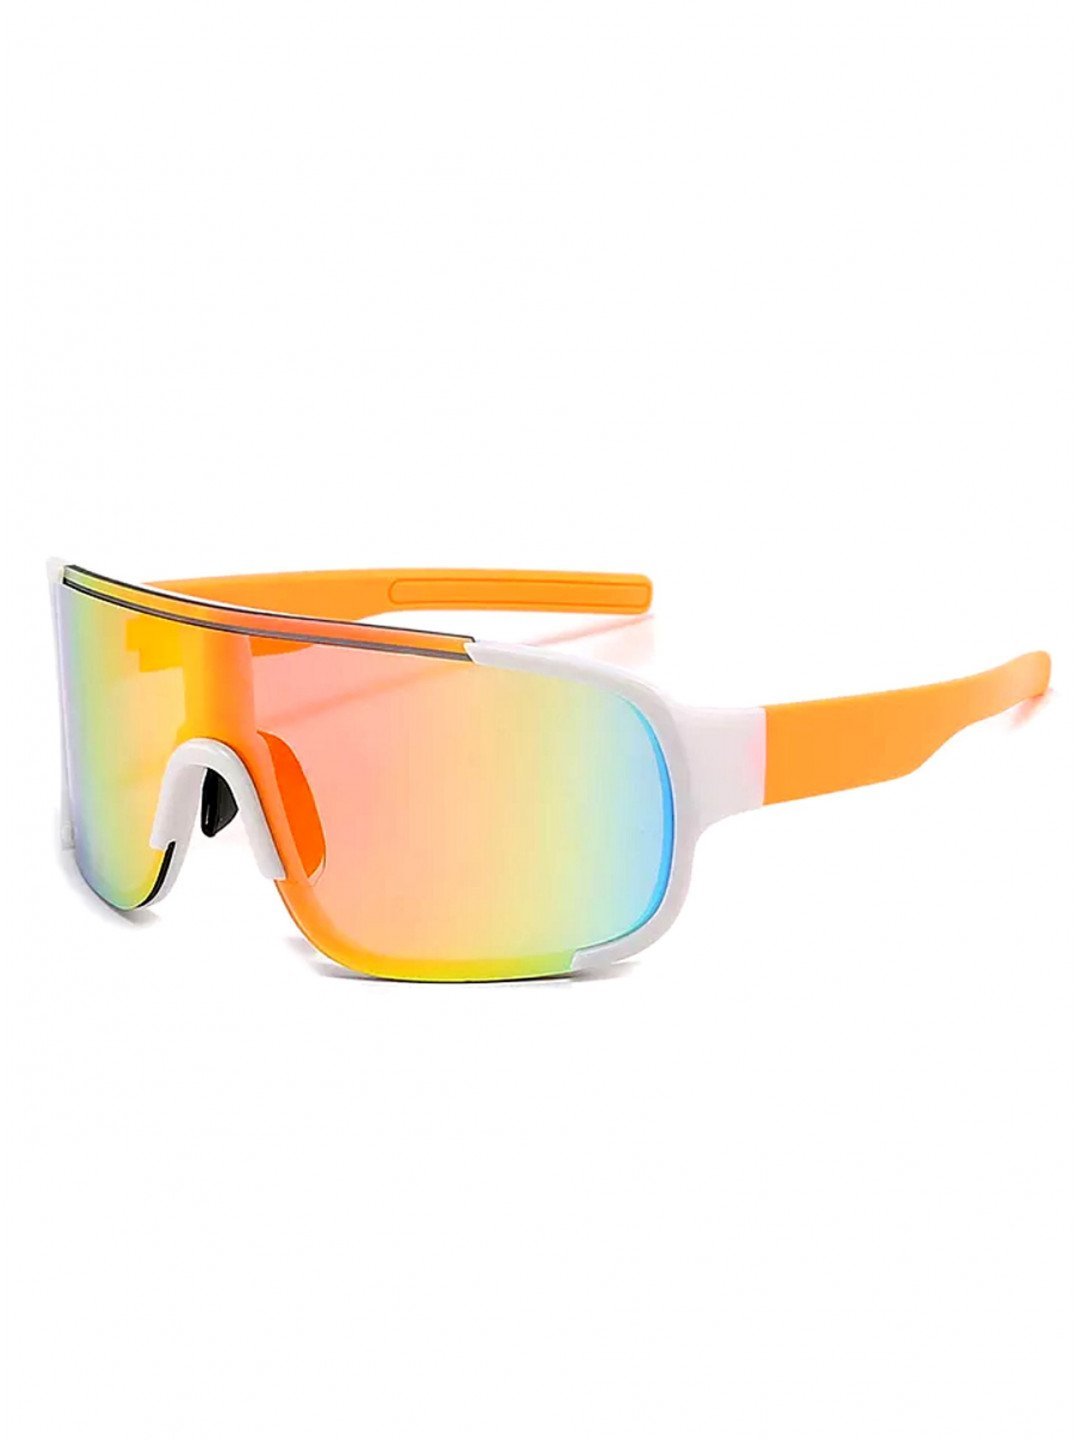 Oranžové pánské sportovní sluneční brýle VeyRey Abihu